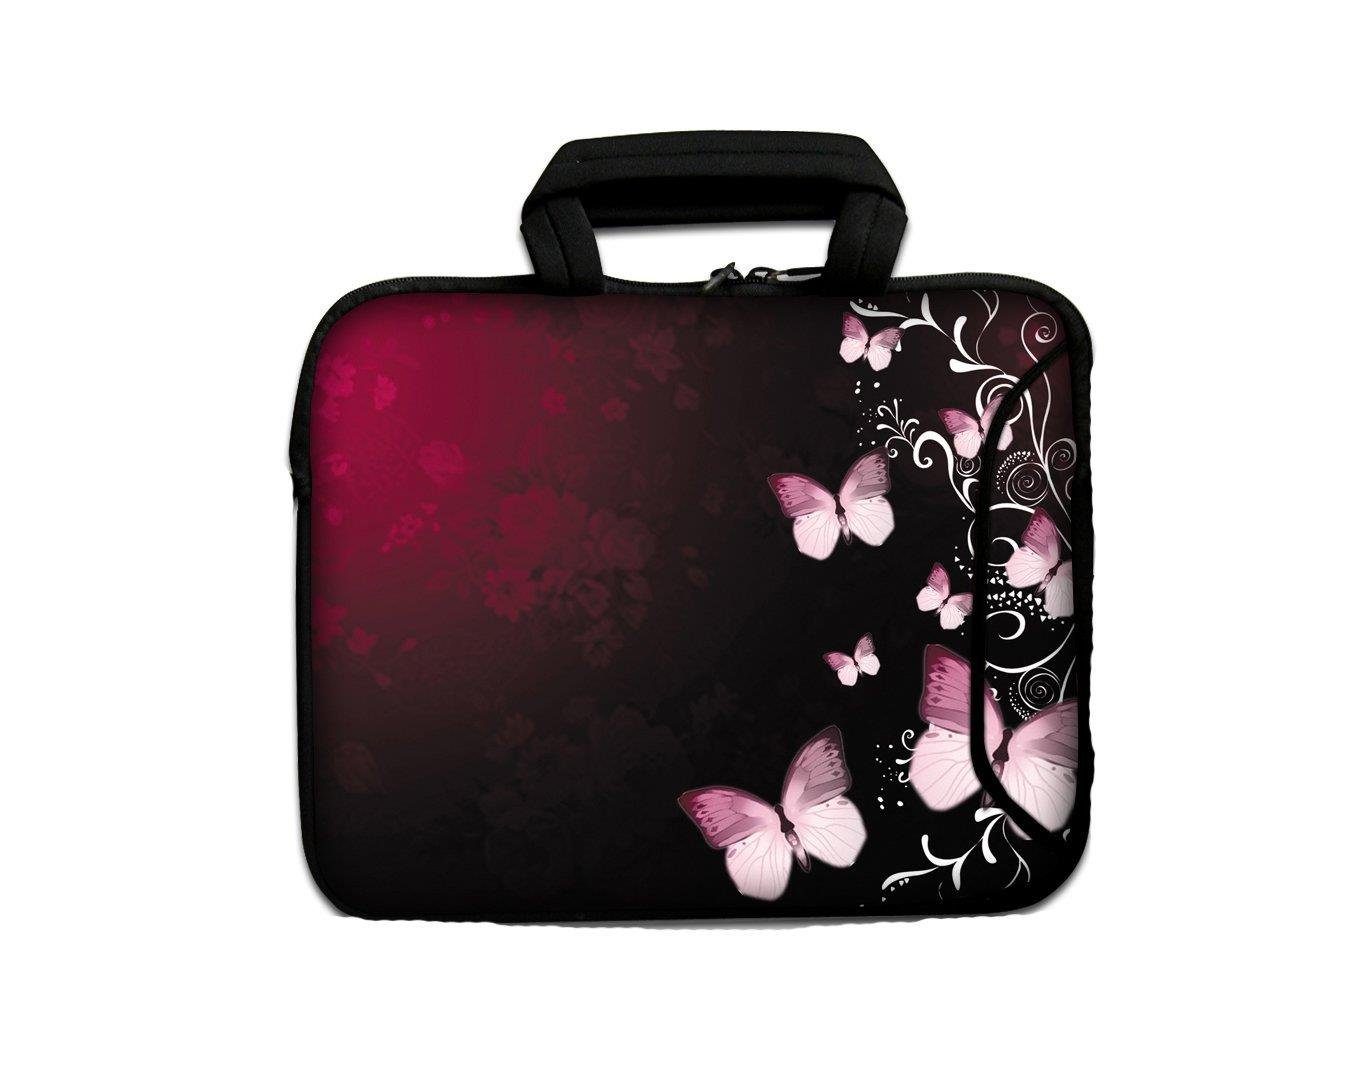 wortek Laptoptasche für Laptops bis 15,4", Butterfly Schwarz Rot, Wasserabweisend, inkl. Zubehörfach, mit Tragegriff